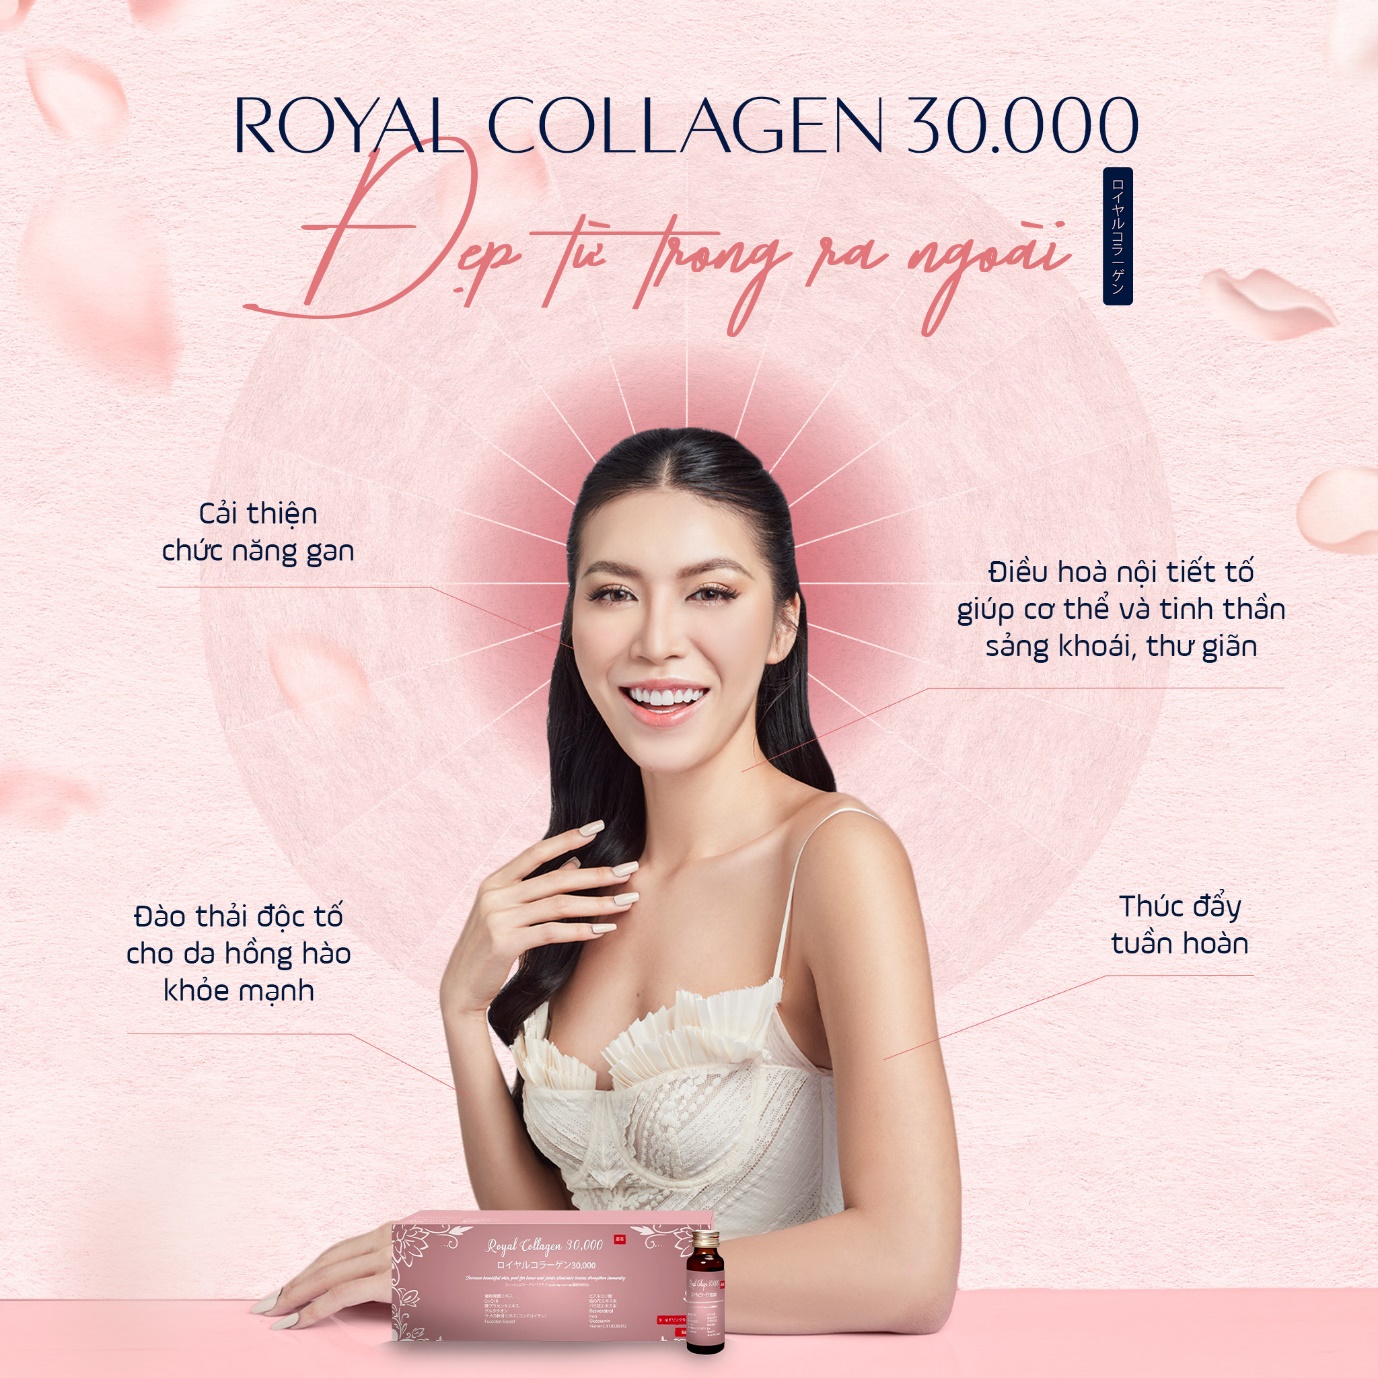 Phái đẹp tò mò về sự vượt trội của công nghệ collagen của Royal collagen 30.000 - ảnh 4